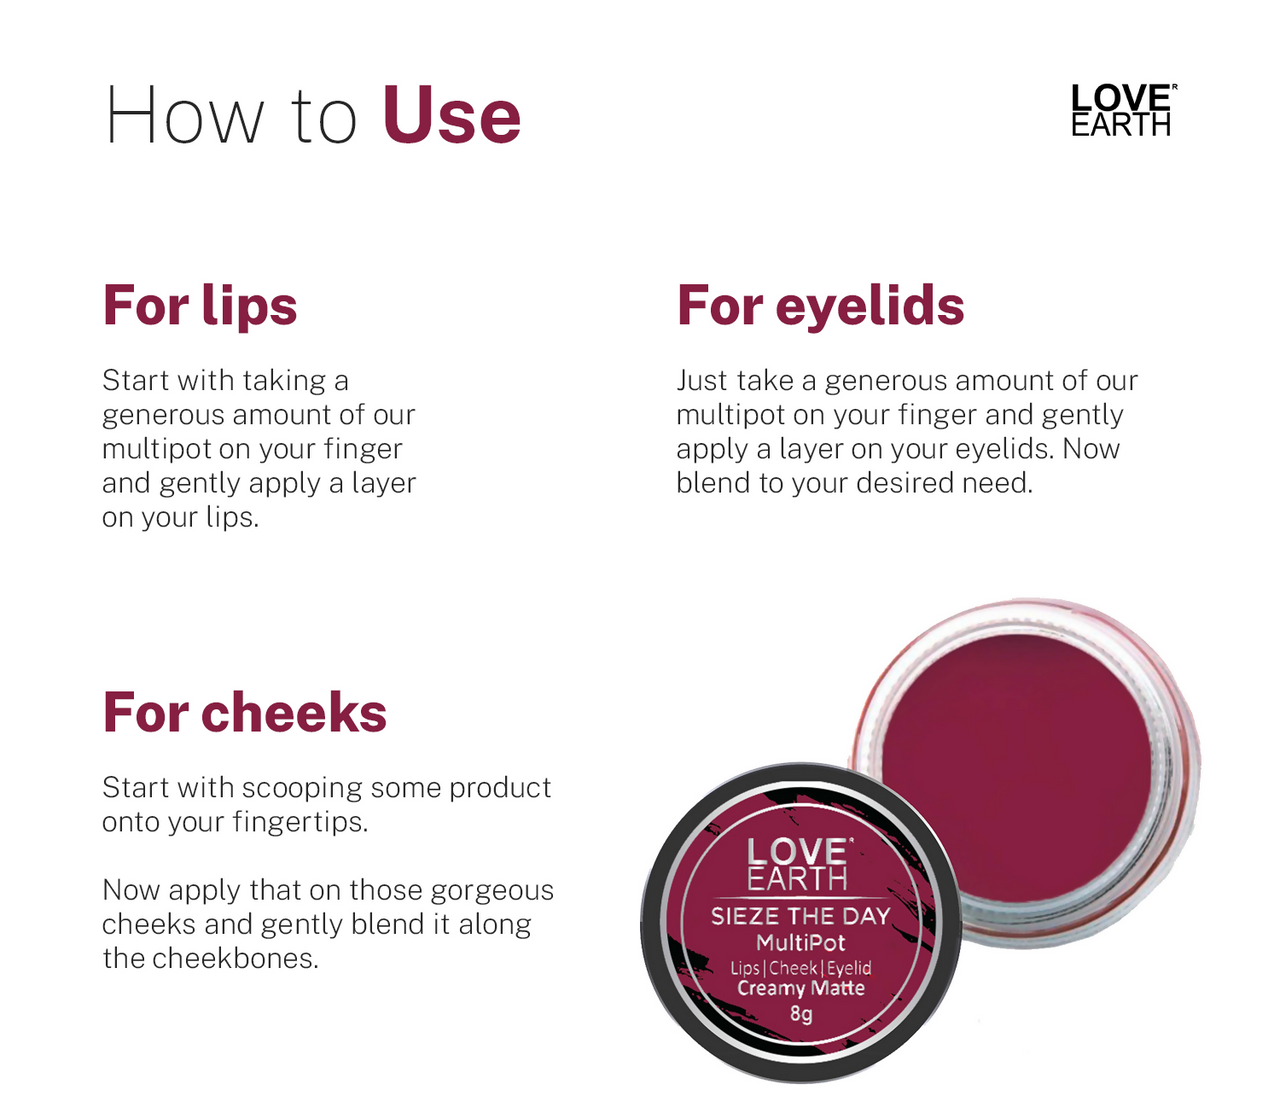 Love Earth Lip Tint & Cheek Tint Multipot Combo Raspberry Pink & Caramel Brown - Distacart